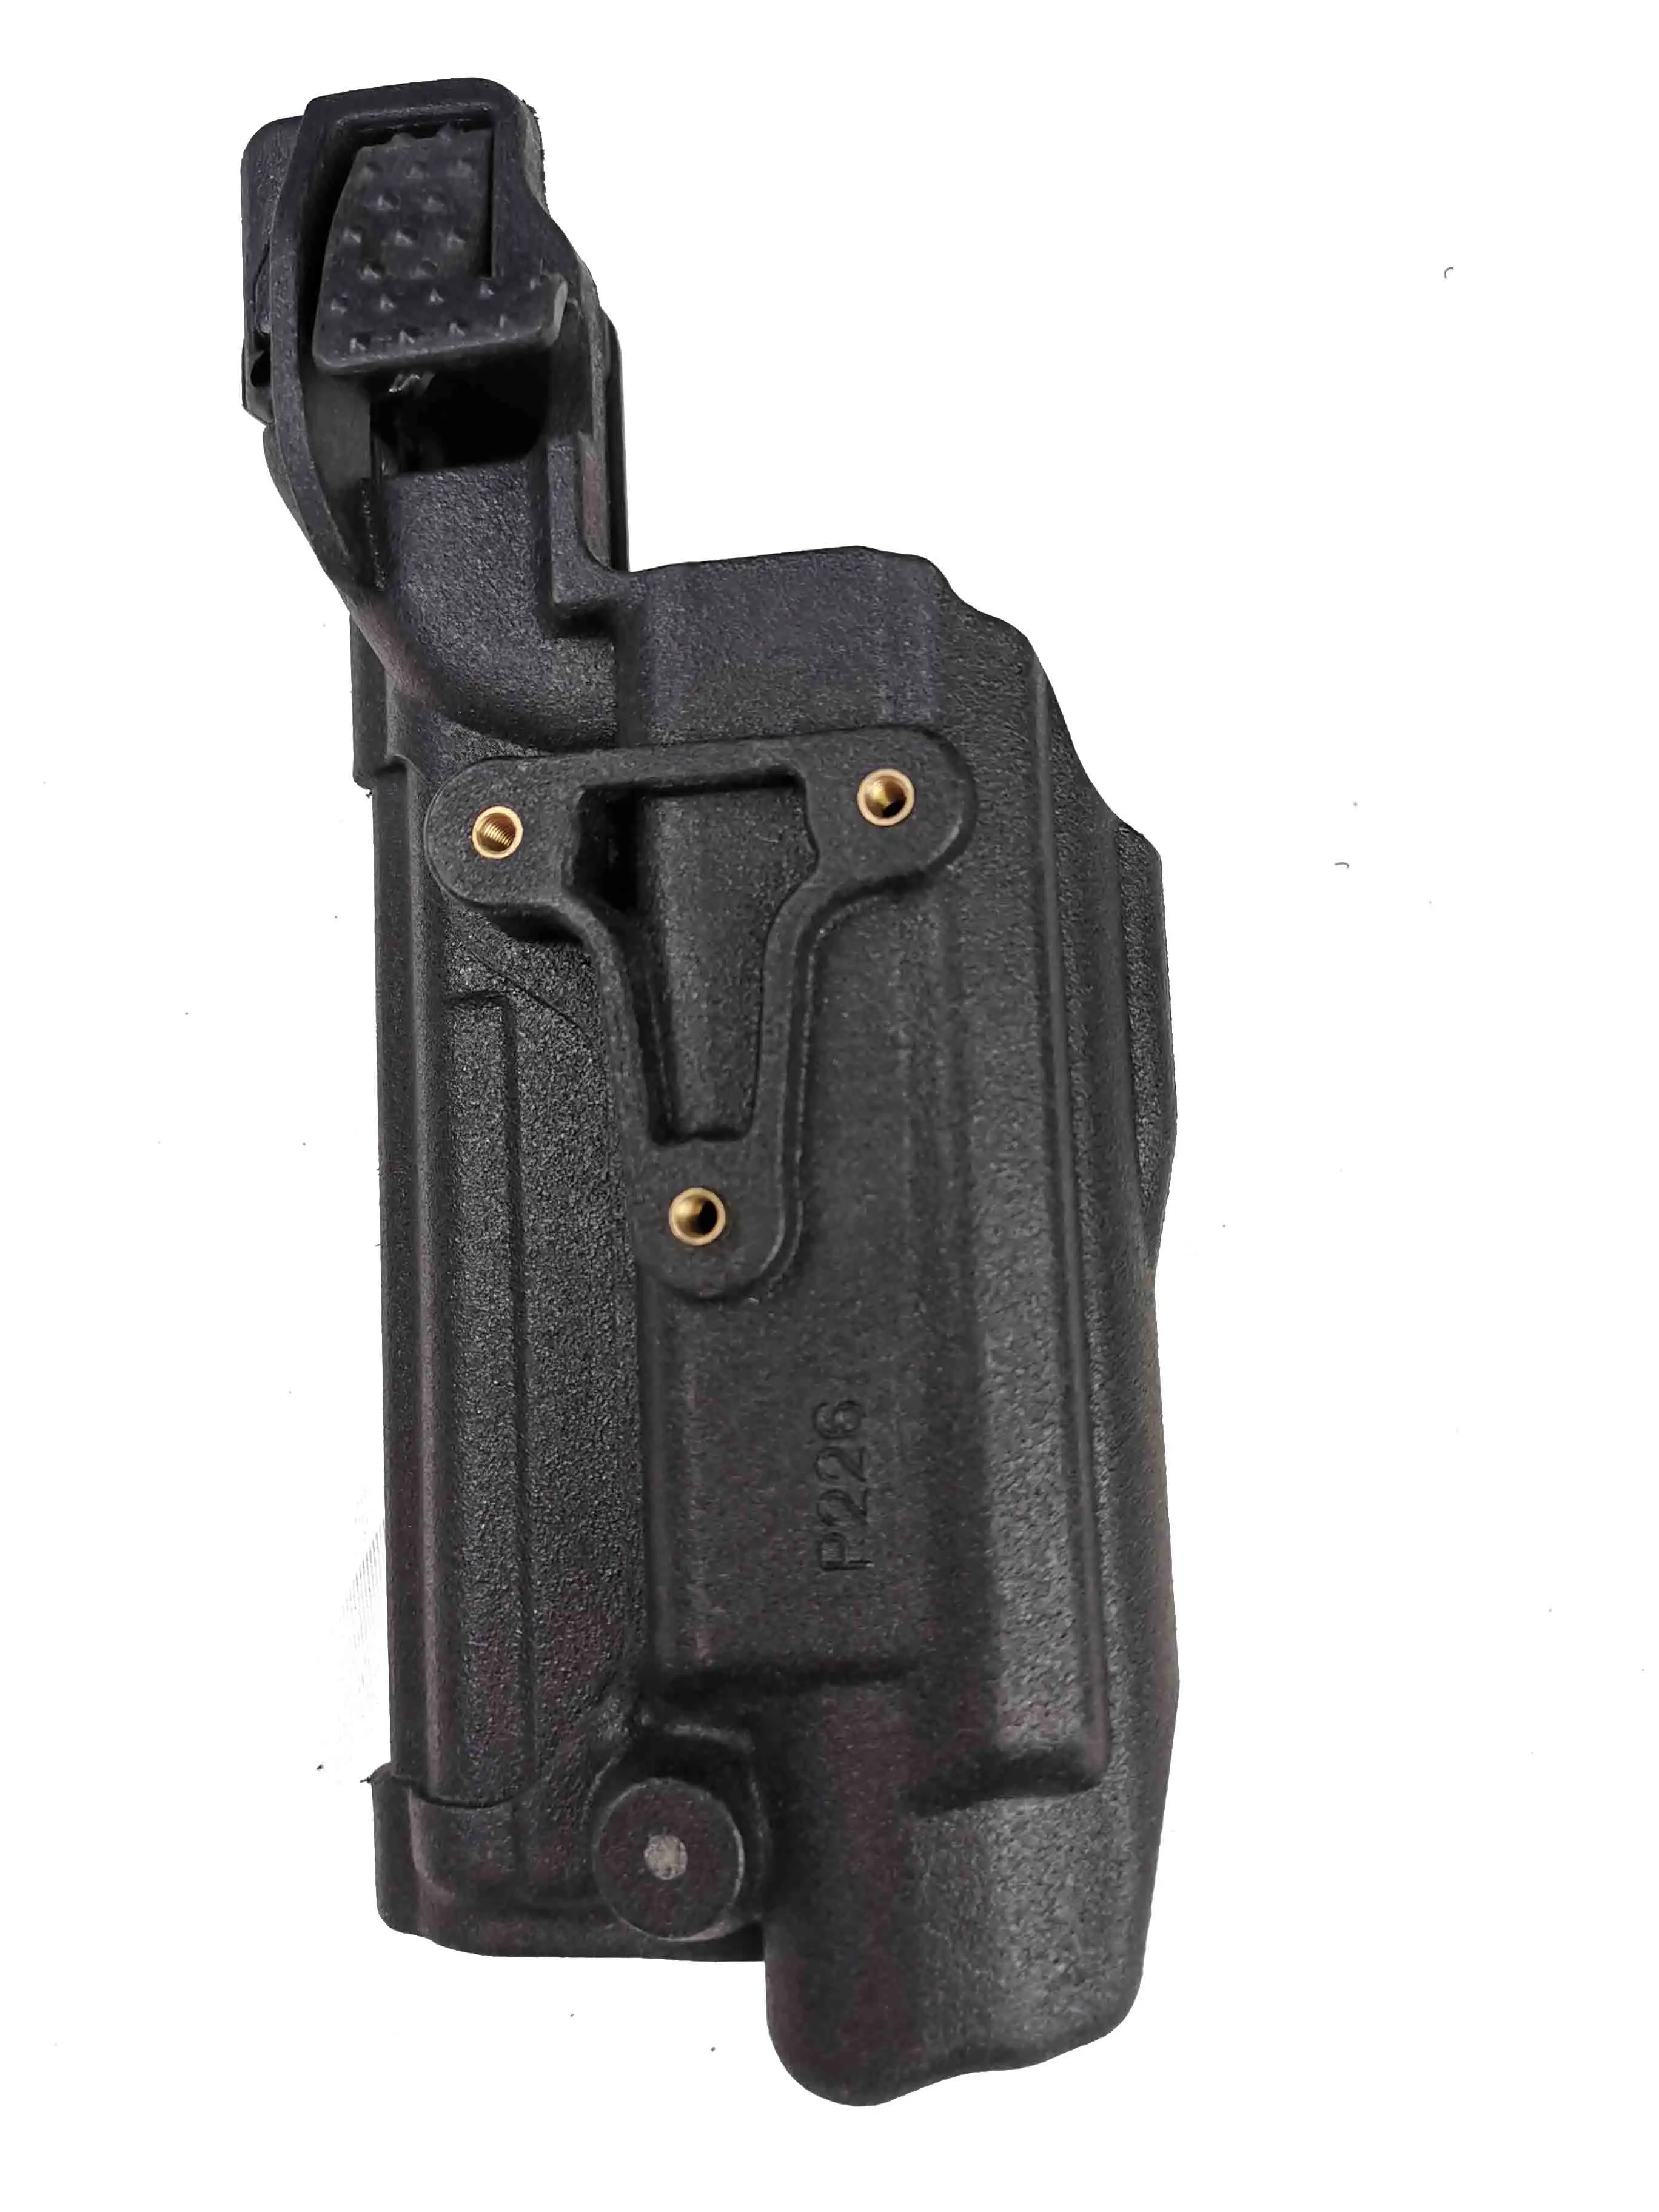 Тактический LV3 кобура для пистолета охотничий военный Glock 17 18 Beretta M9 1911 P226 USP светильник носильщик компактный поясной ремень кобура